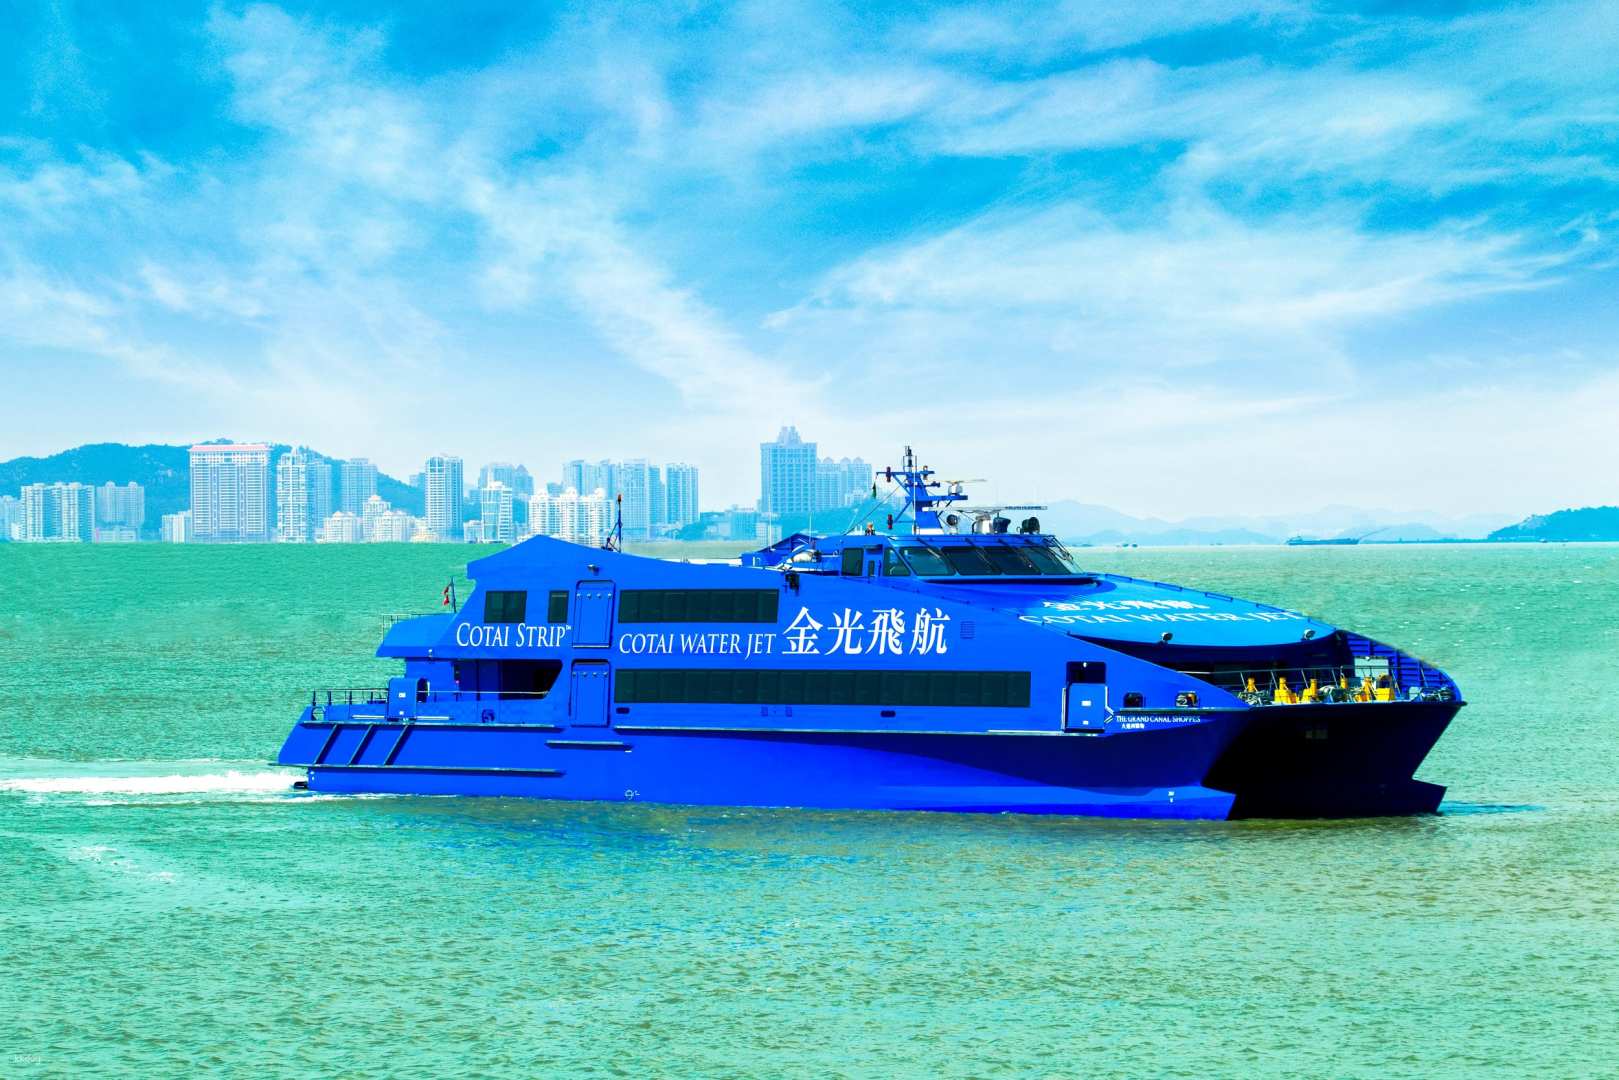 香港,澳門-金光飛航單程船票| 香港上環碼頭 -澳門氹仔碼頭| 標準艙/頭等艙船票